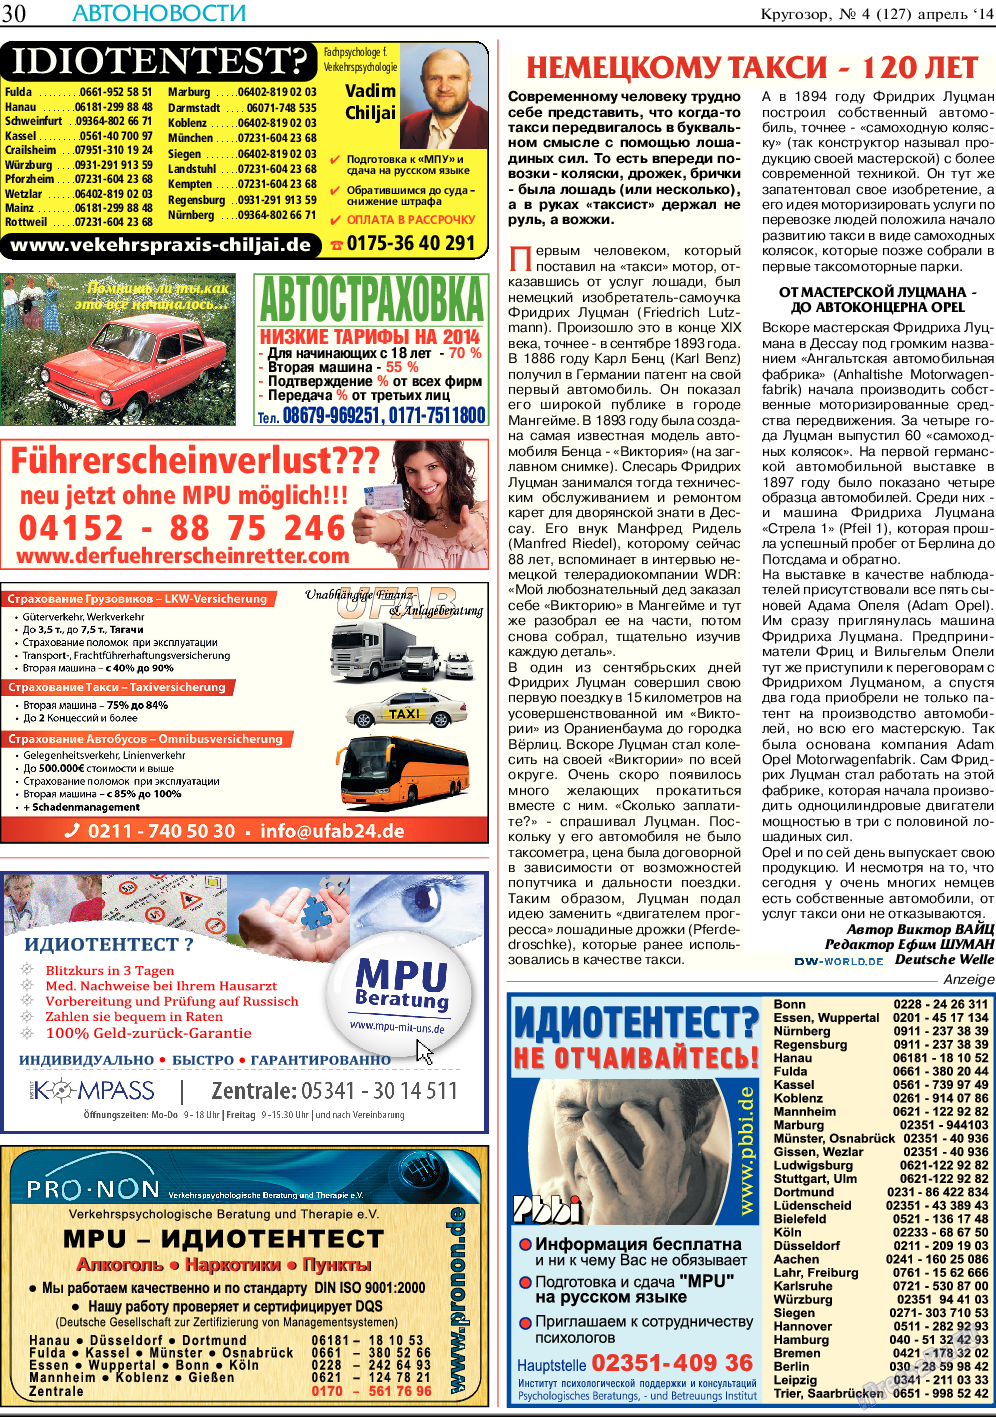 Кругозор, газета. 2014 №4 стр.30